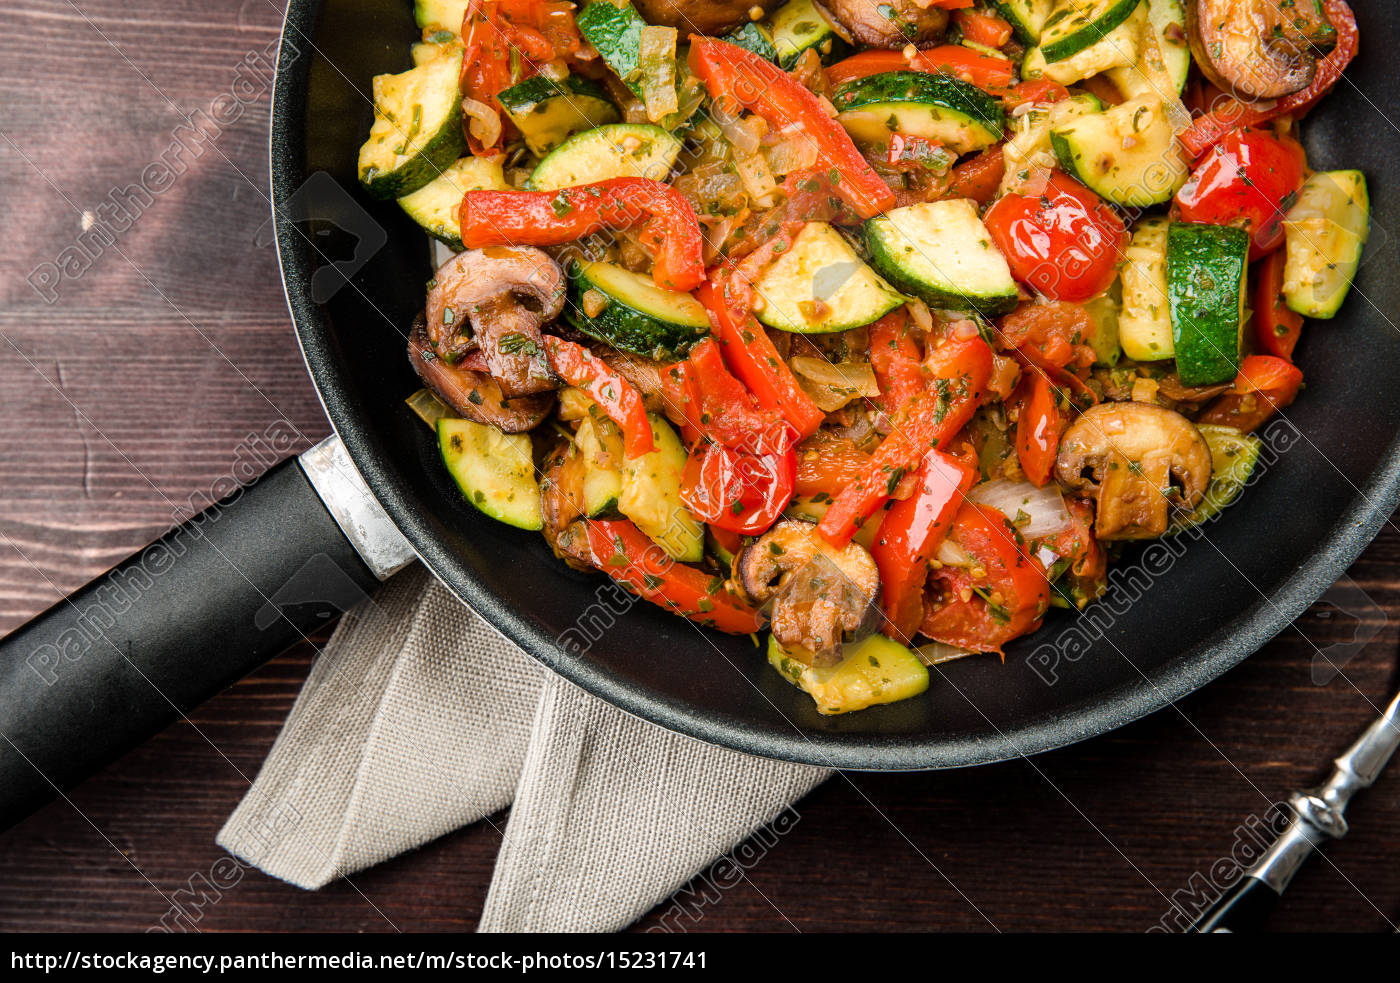 Gemüsepfanne mit frischem Gemüse ohne Fleisch - Stockfoto #15231741 ...